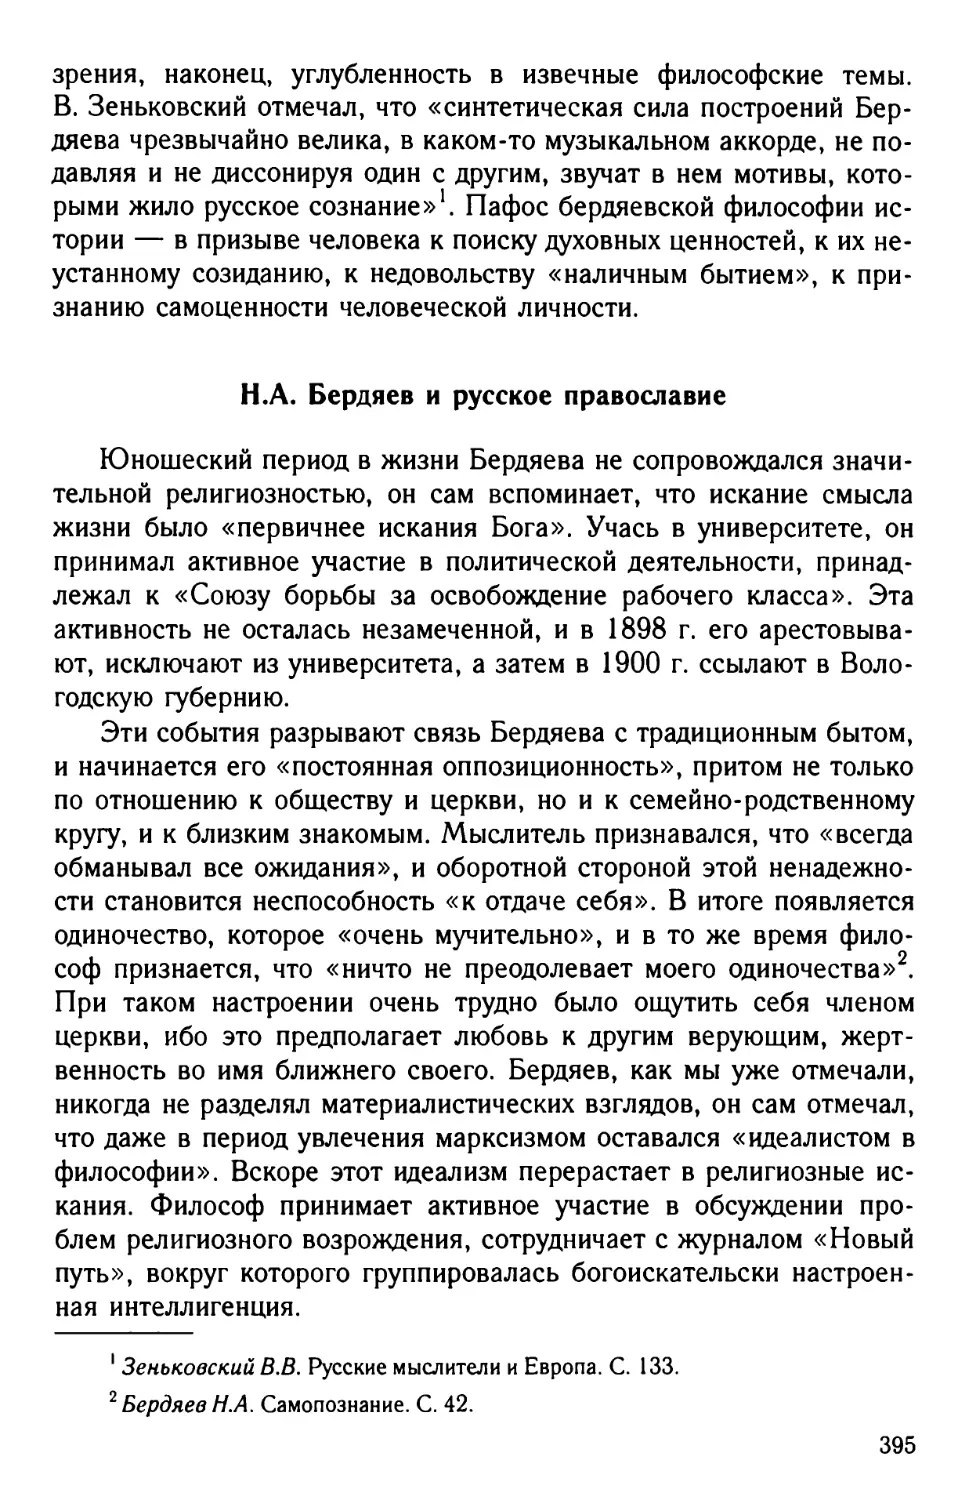 H.A. Бердяев и русское православие